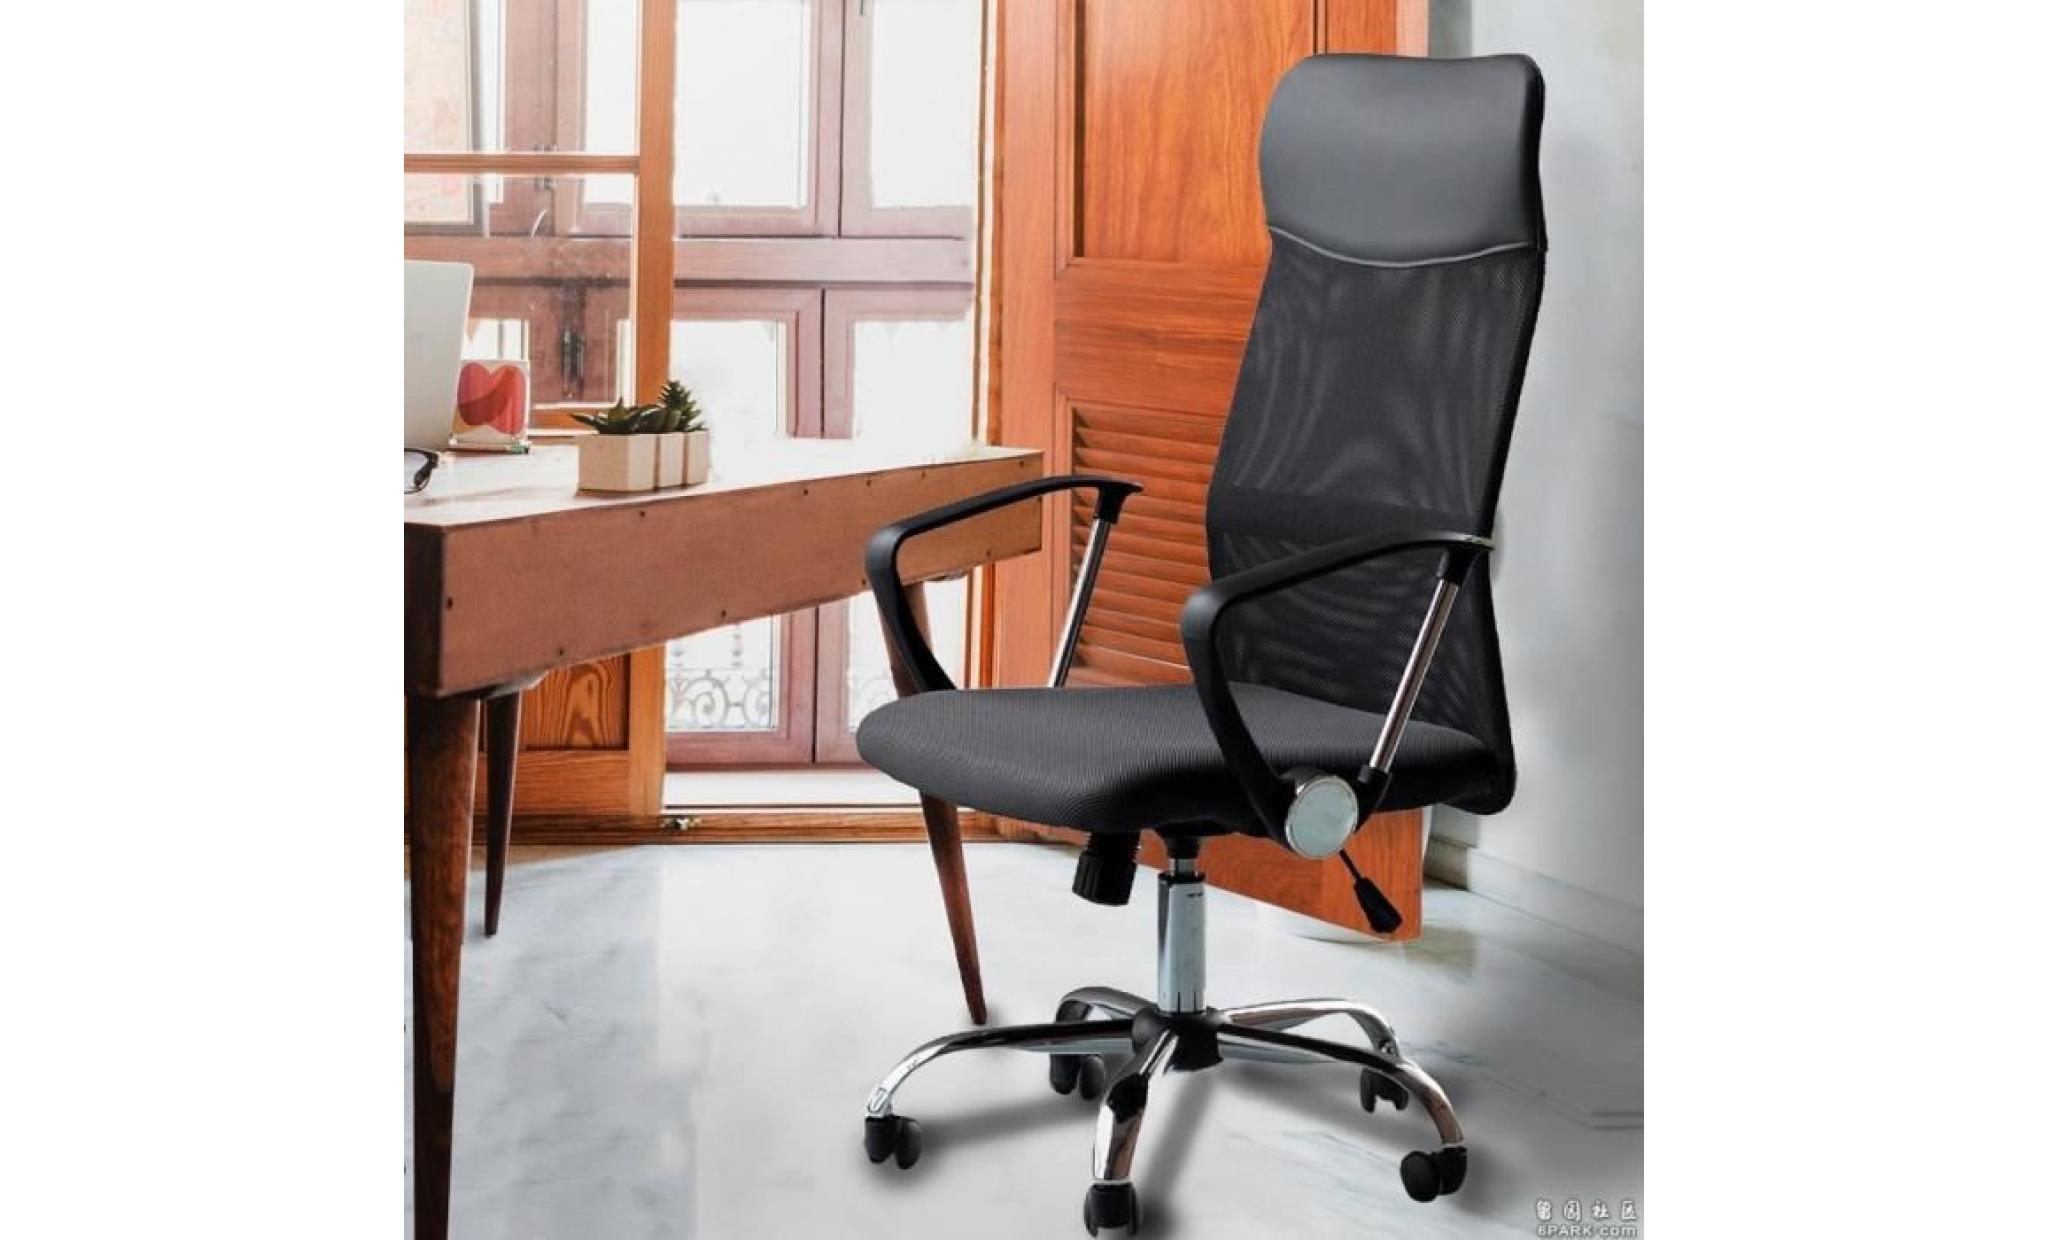 aubays   fauteuil, chaise de bureau confortable en pu cuir métal plastique réseau noir avec 5 roulettes pivotant à 360